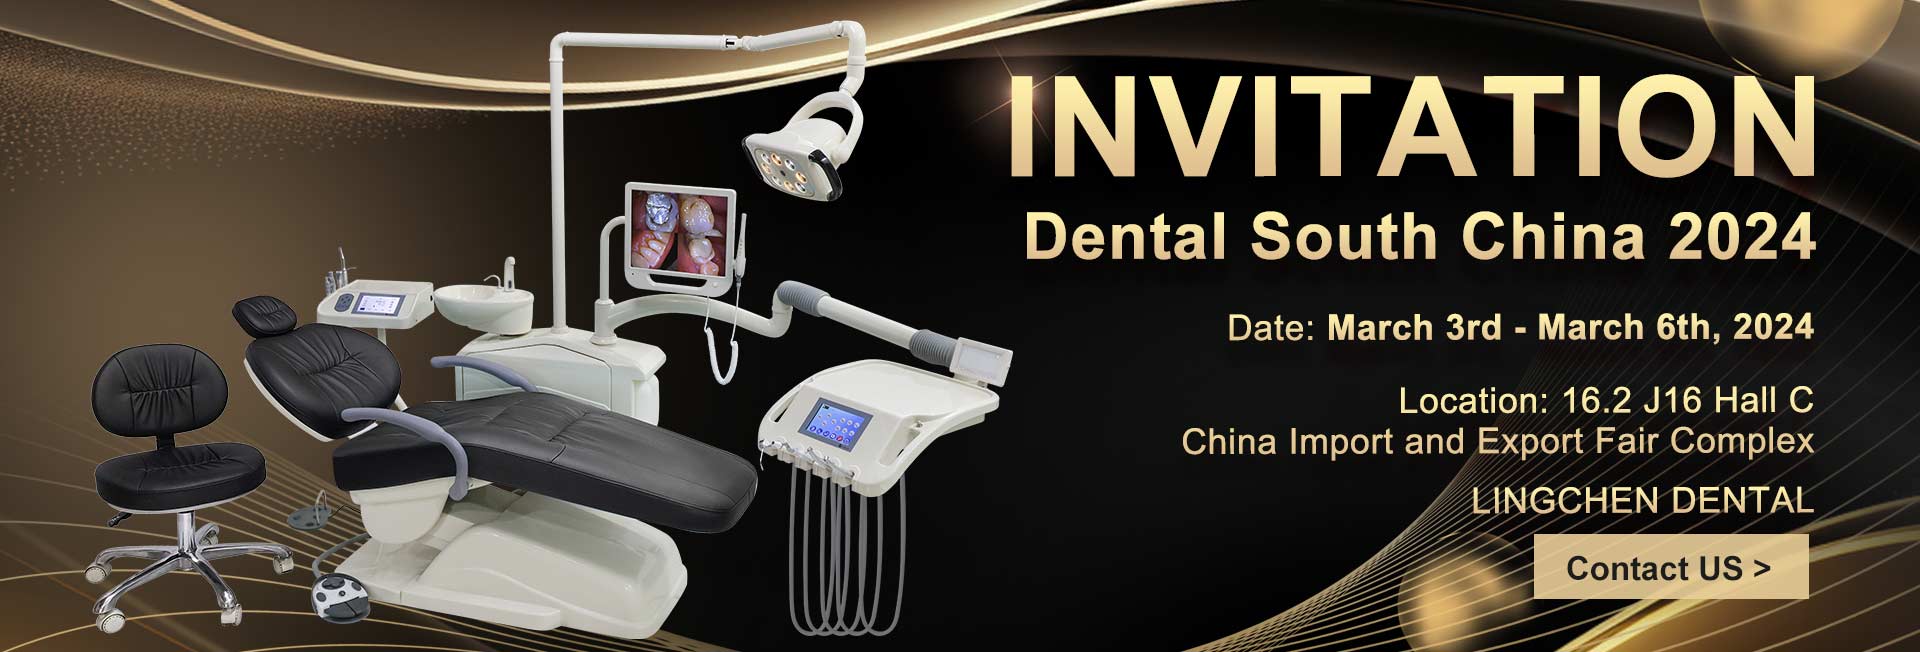 Invito dentale della Cina meridionale 2024